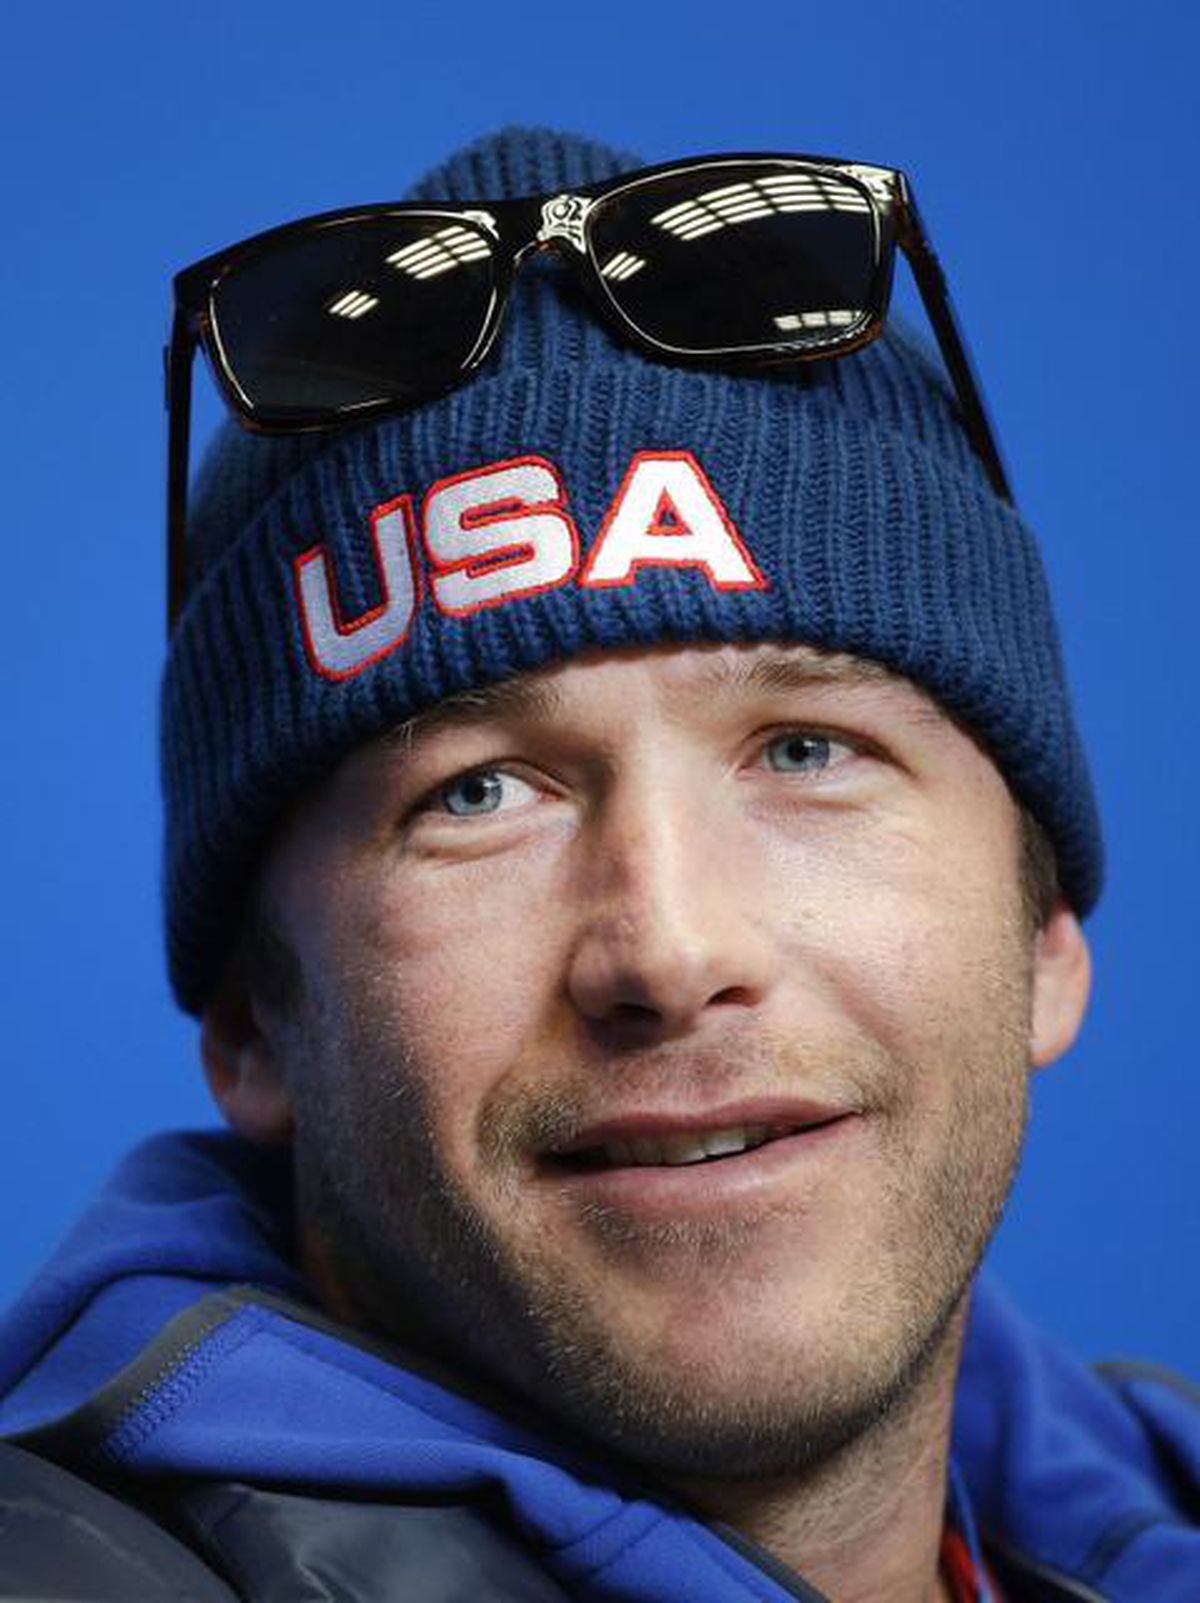 Ex-Olympic skier Bode Miller ‘beyond devastated’ after death of 19 ...